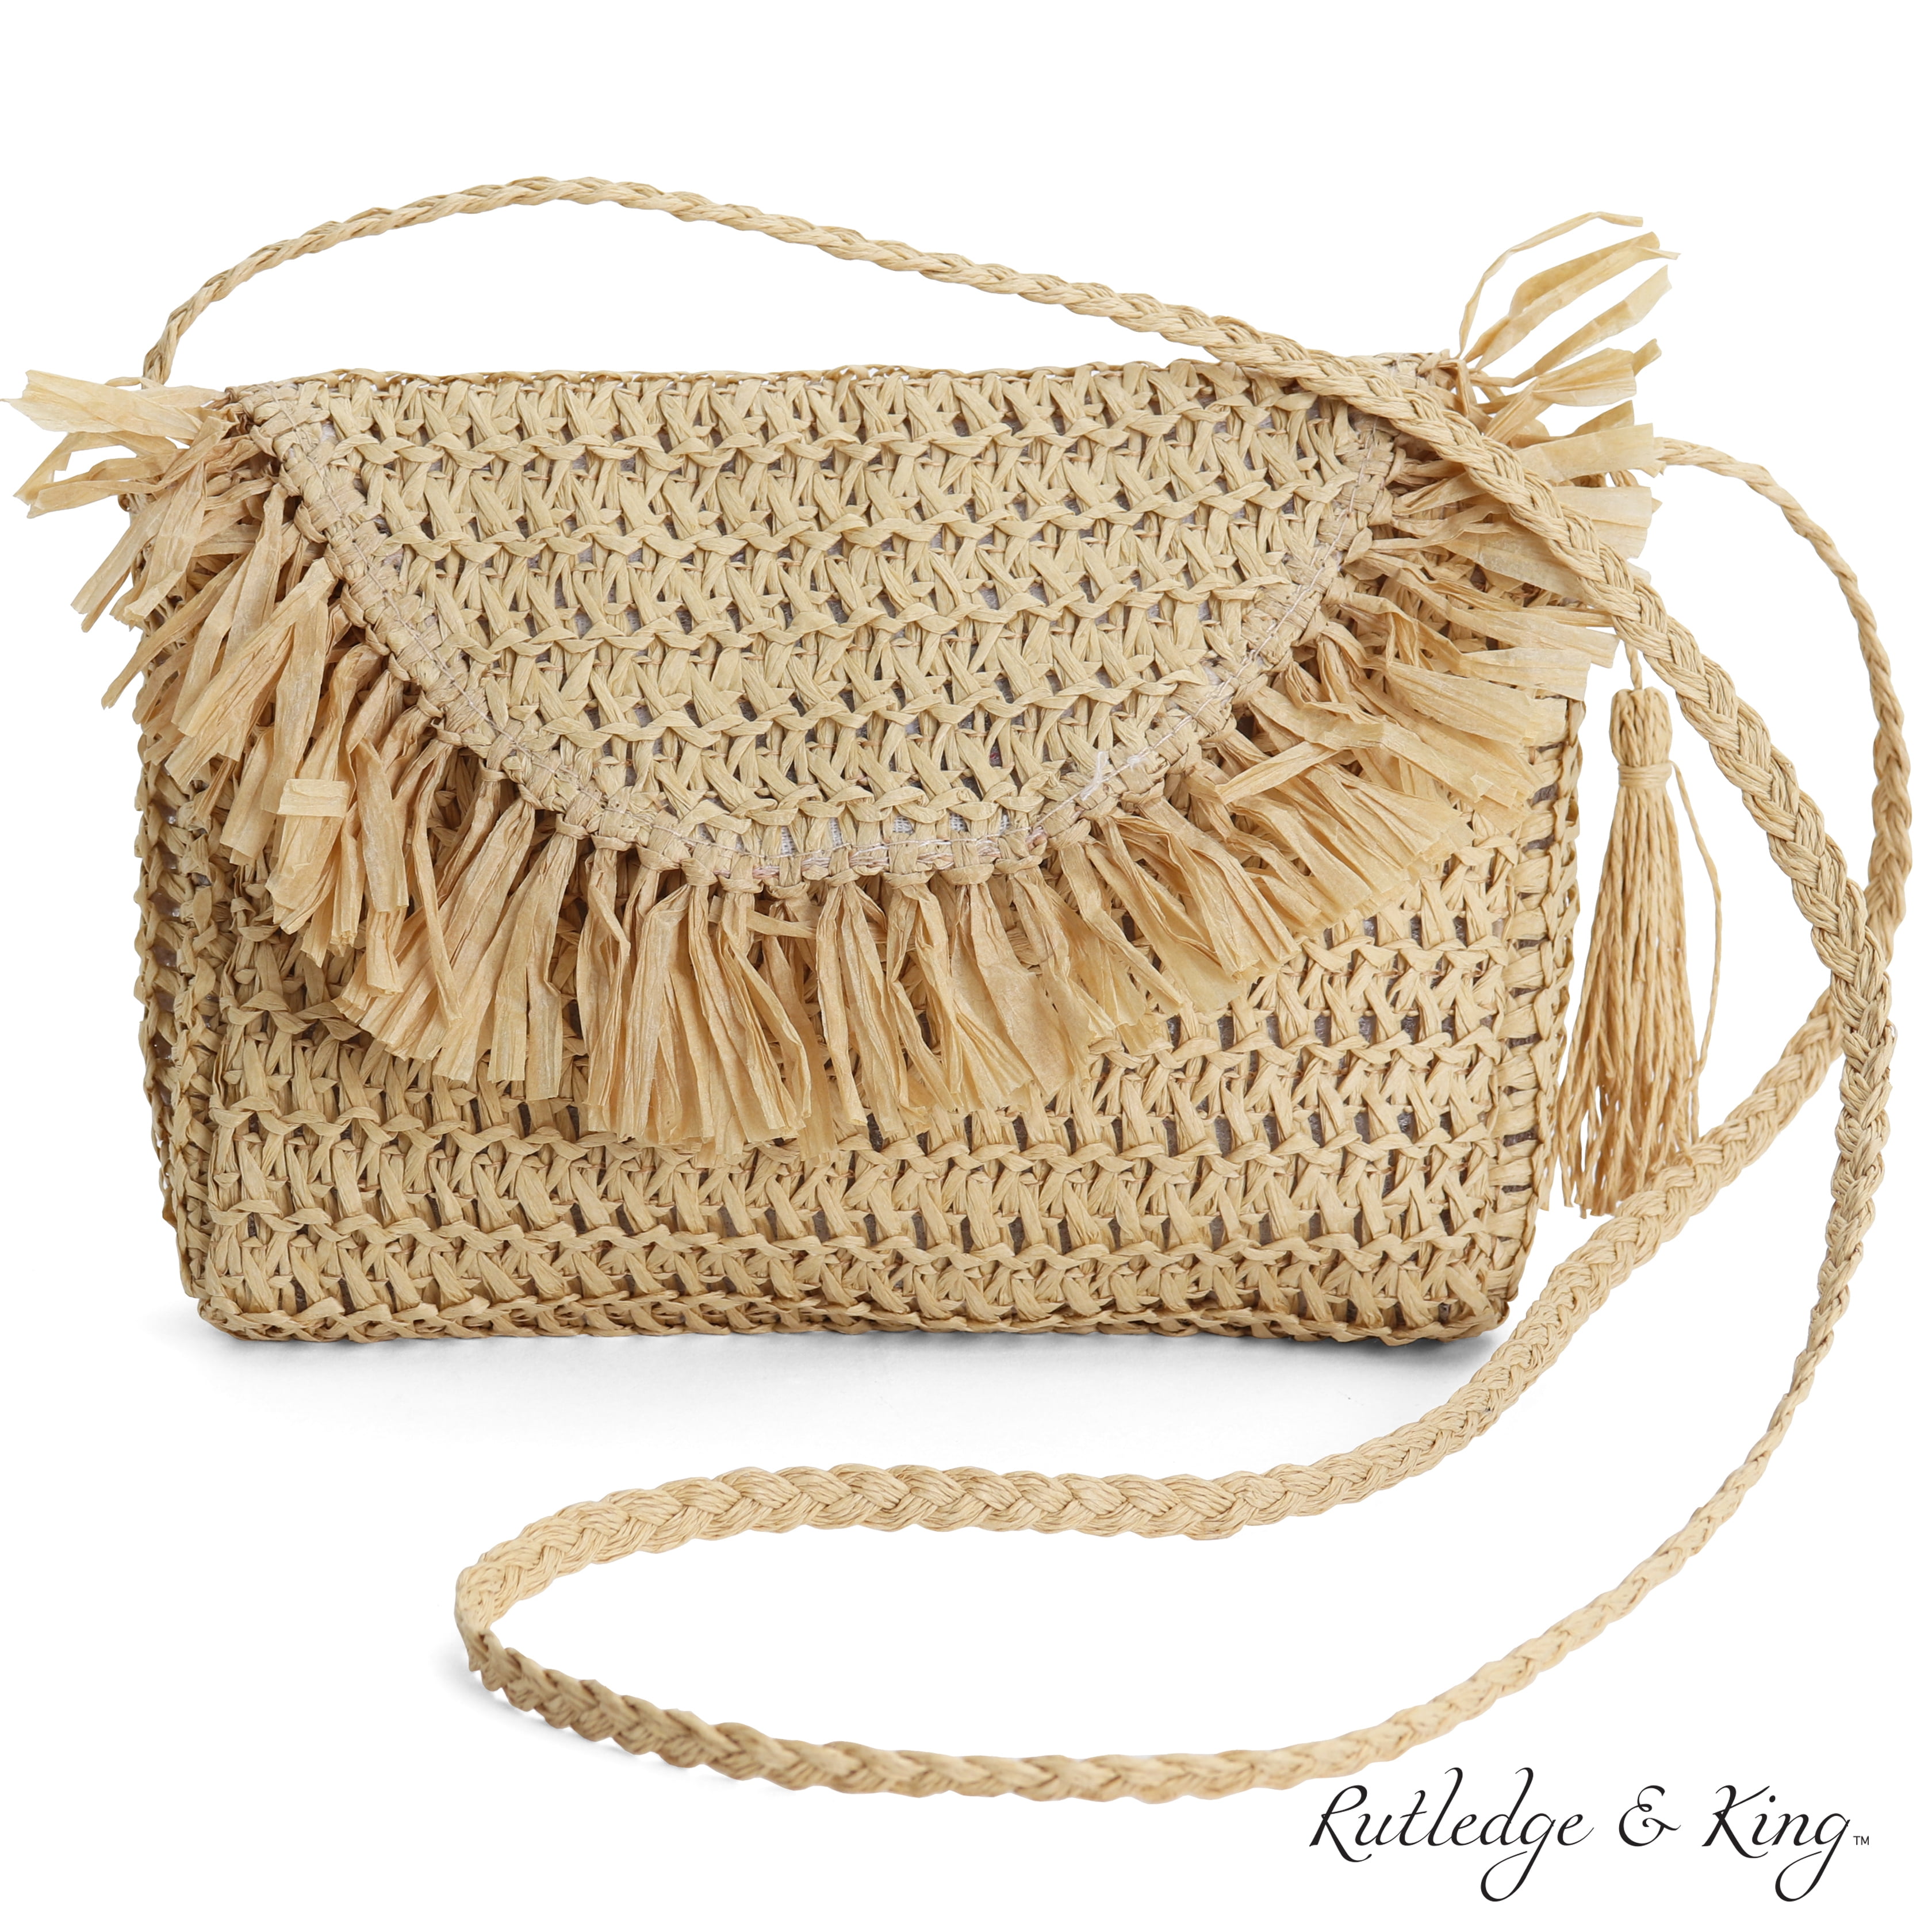 Rutledge & King Straw Crossbody Bag with Handle - Straw Purse (Ashley ...